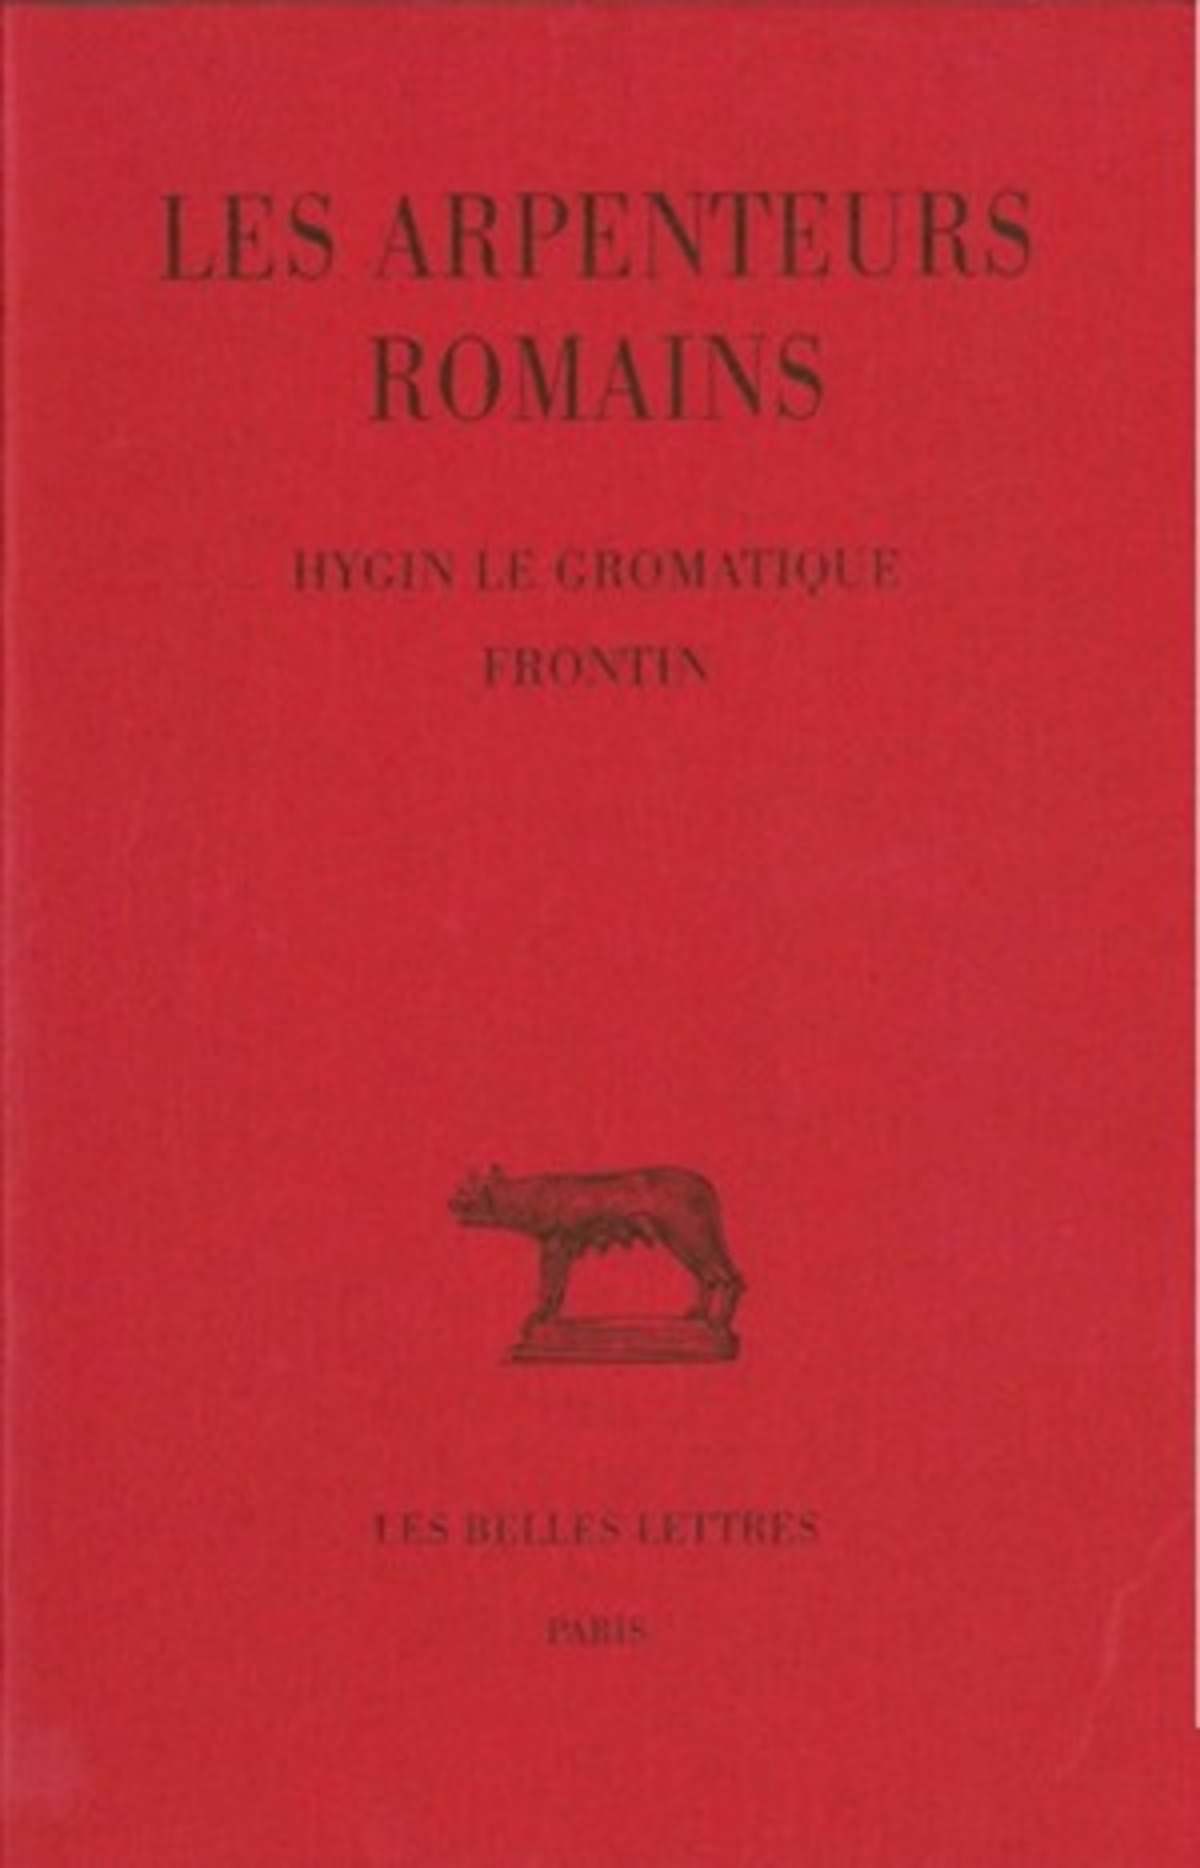 Les Arpenteurs romains. Tome I : Hygin le gromatique - Frontin